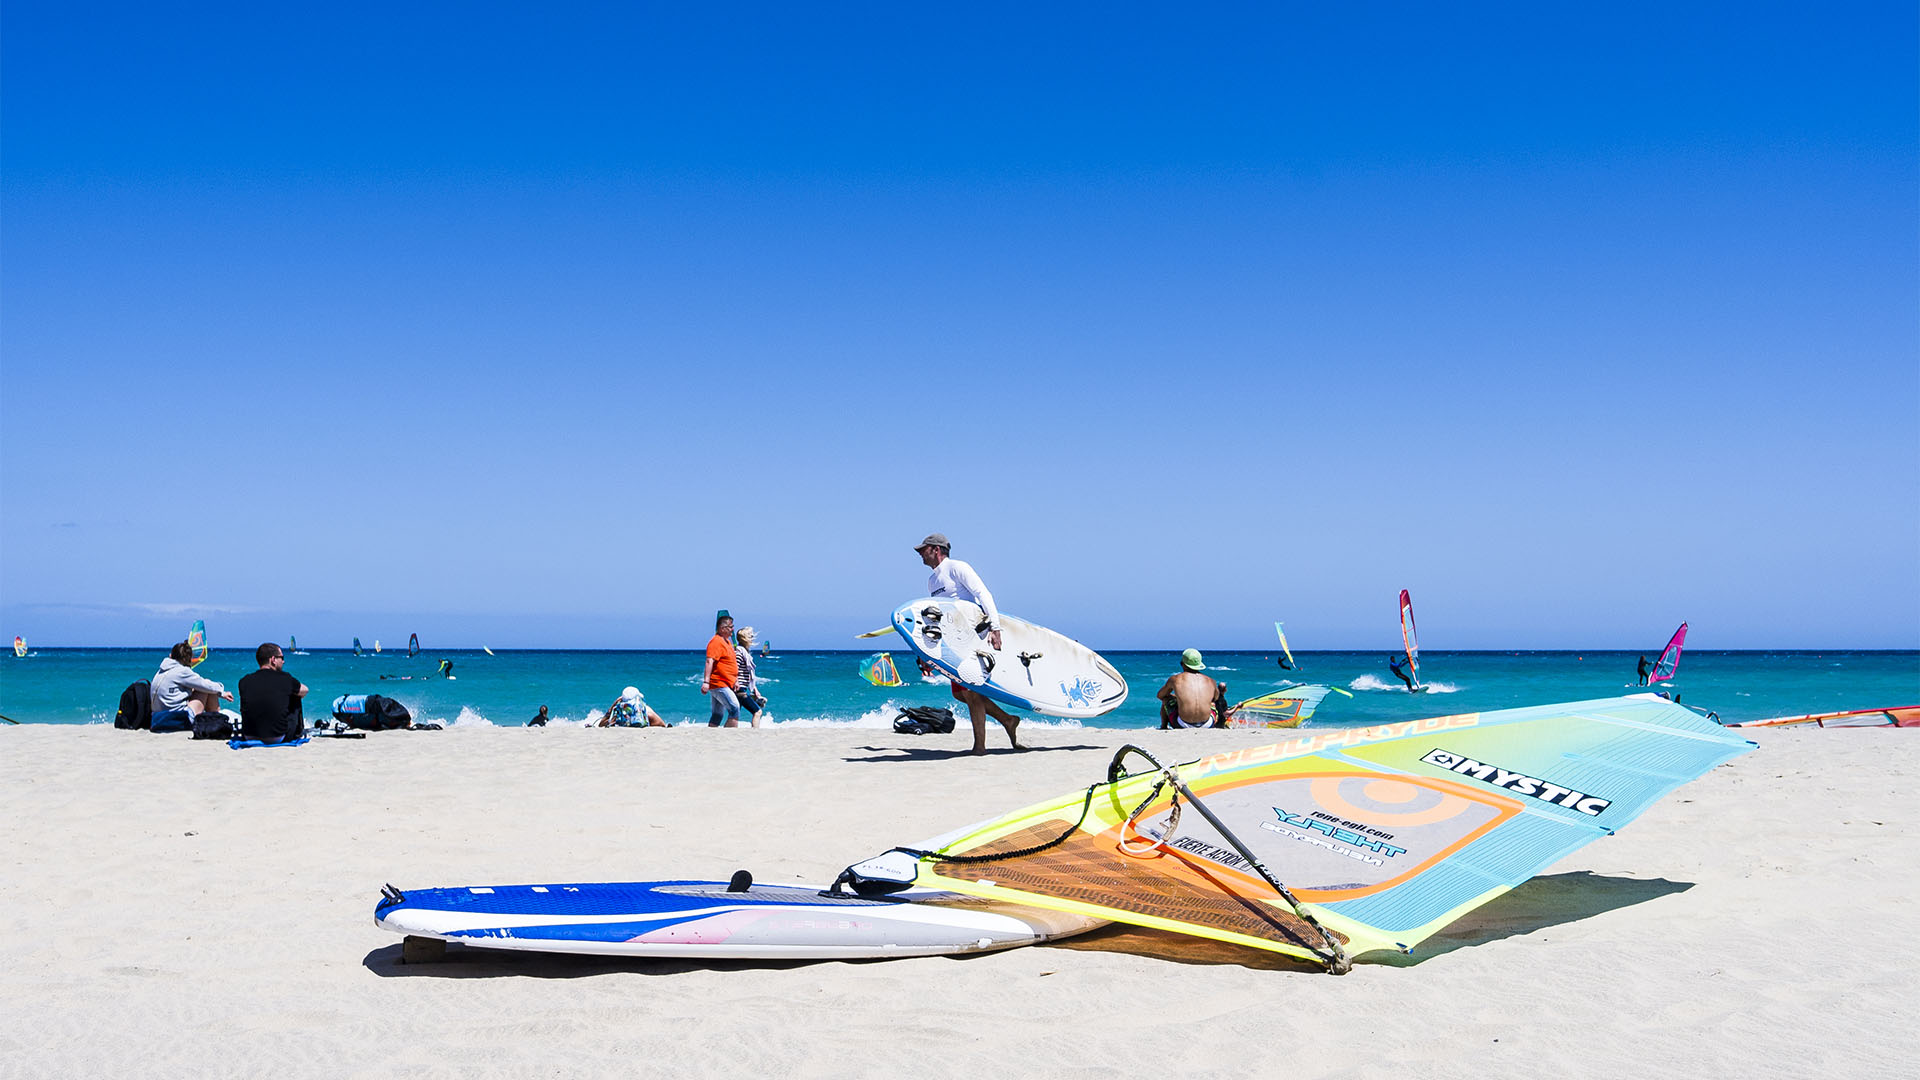 Am nördlichen Strand von Sotavento, Fuerteventura: Alles Windsurf. Ein grosses Familientreffen.